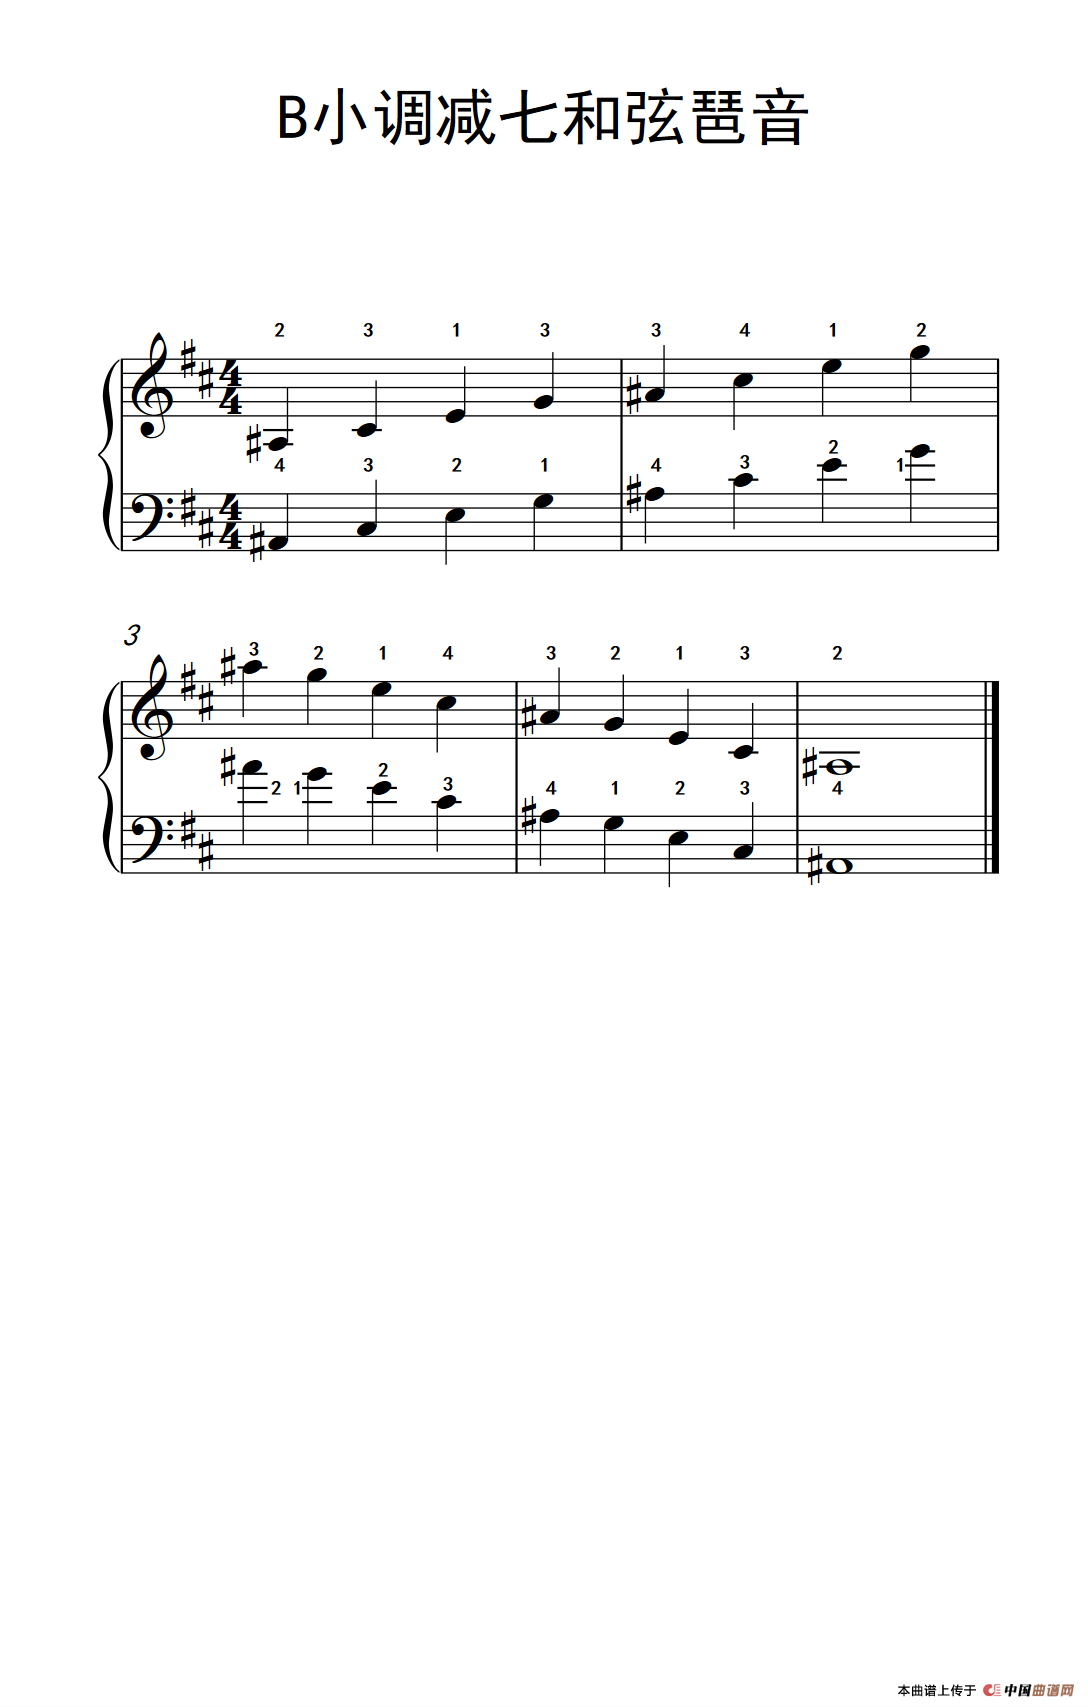 《B小调减七和弦琶音》钢琴曲谱图分享